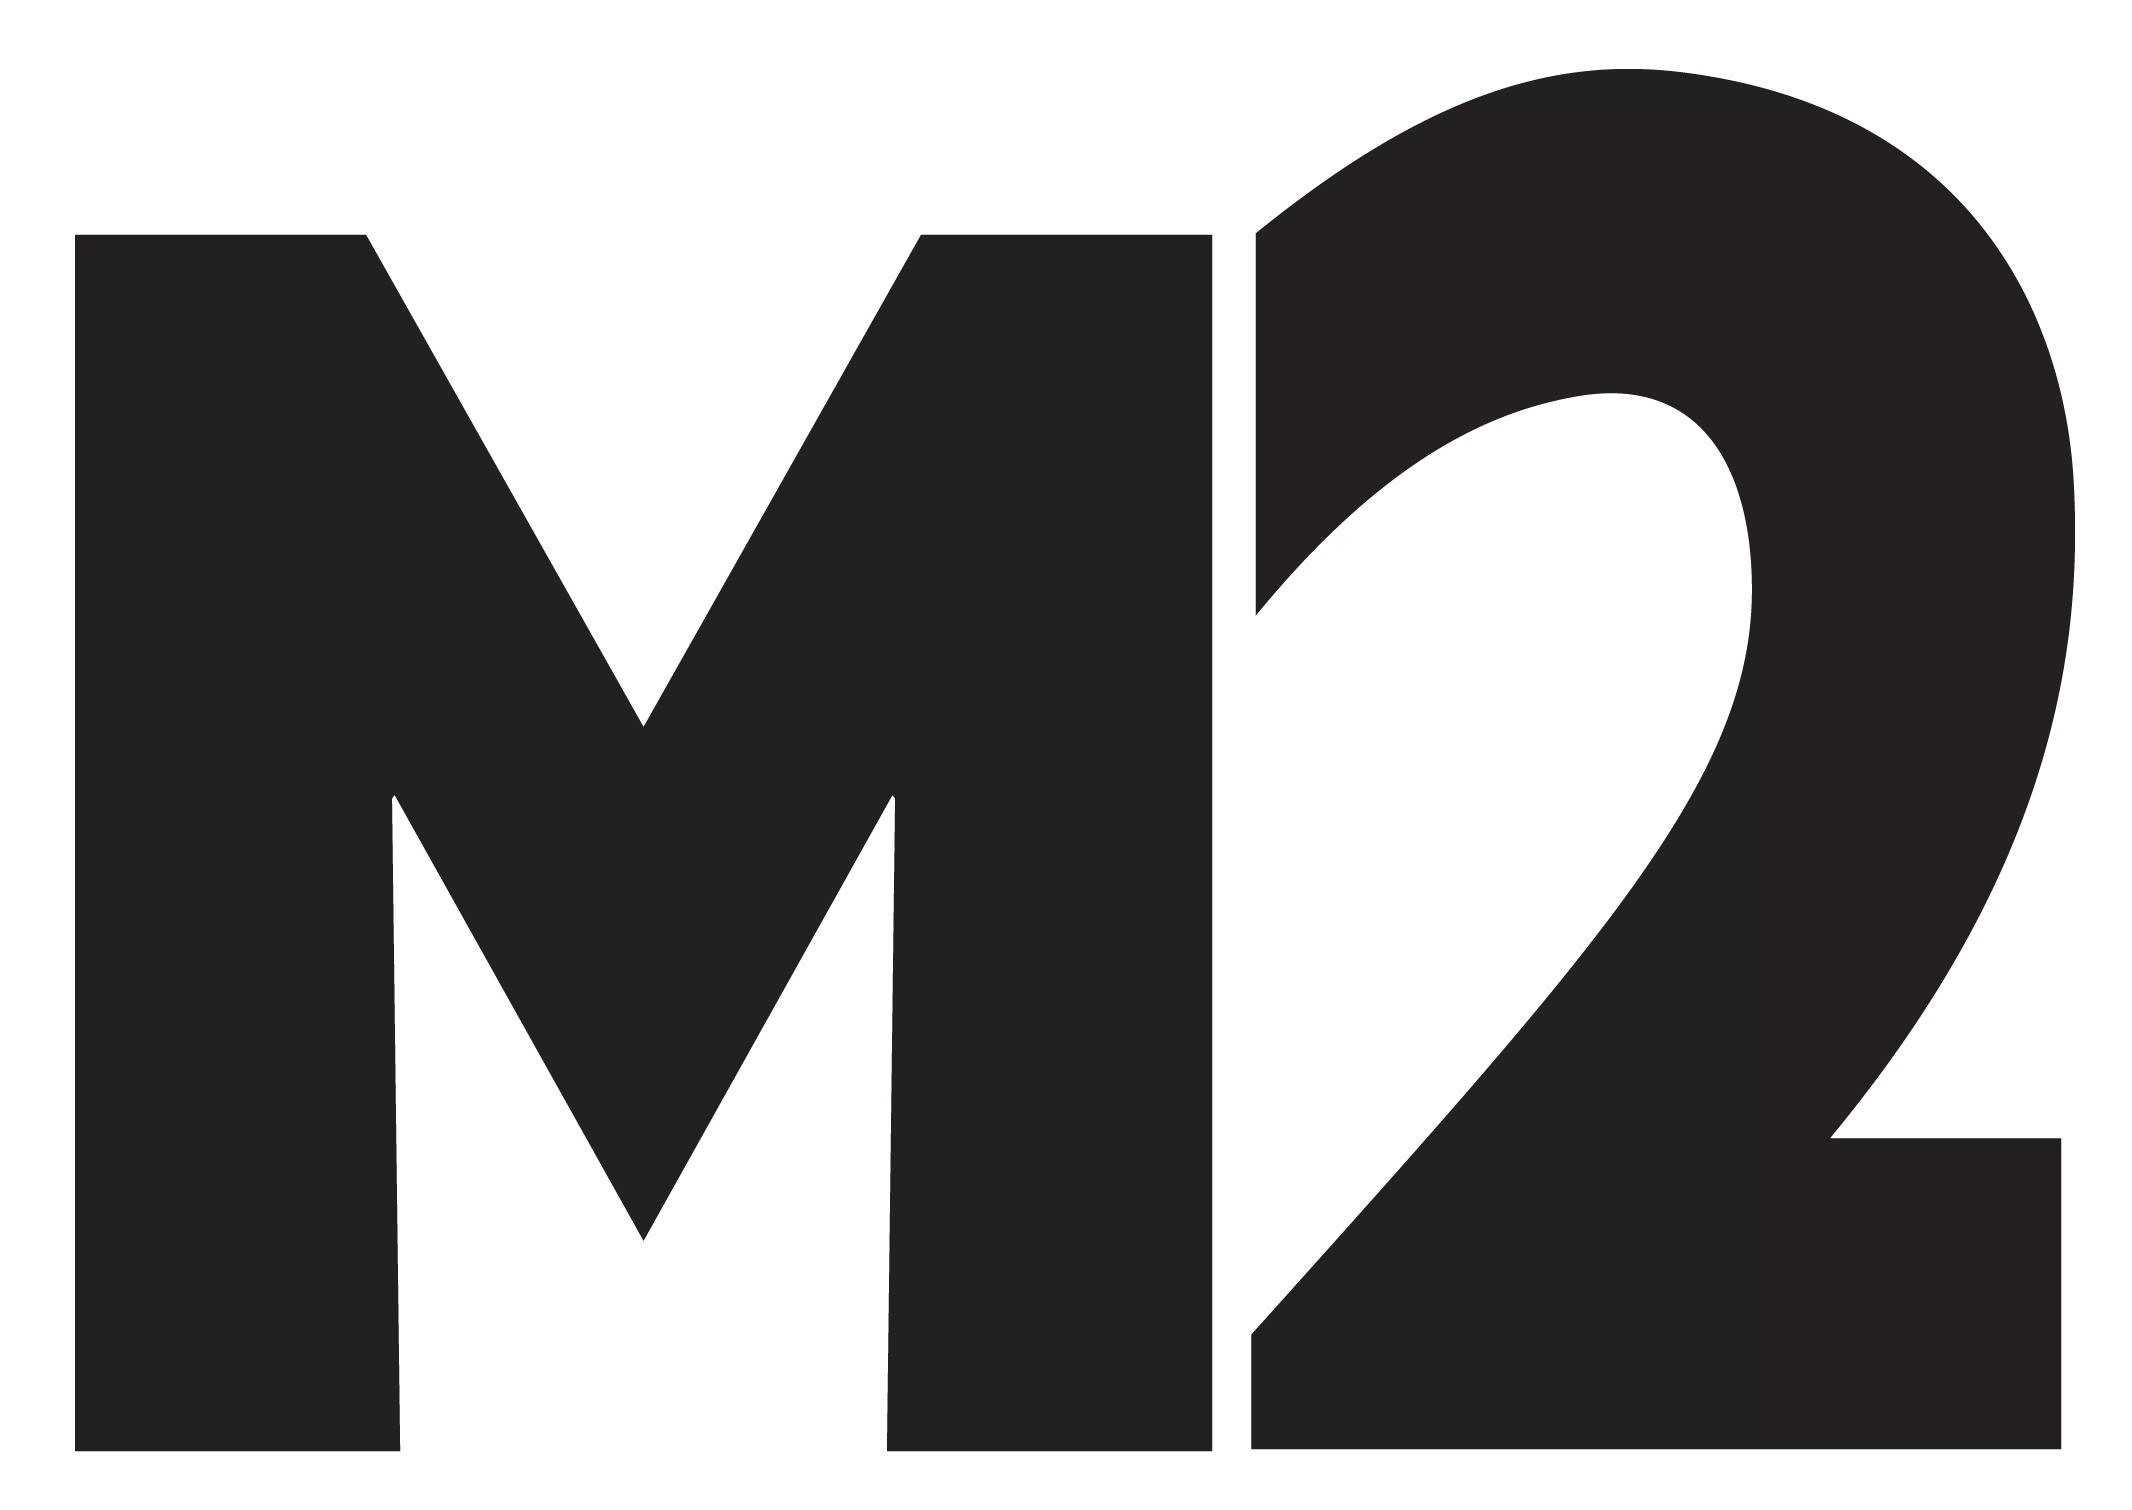 M2 Magazine